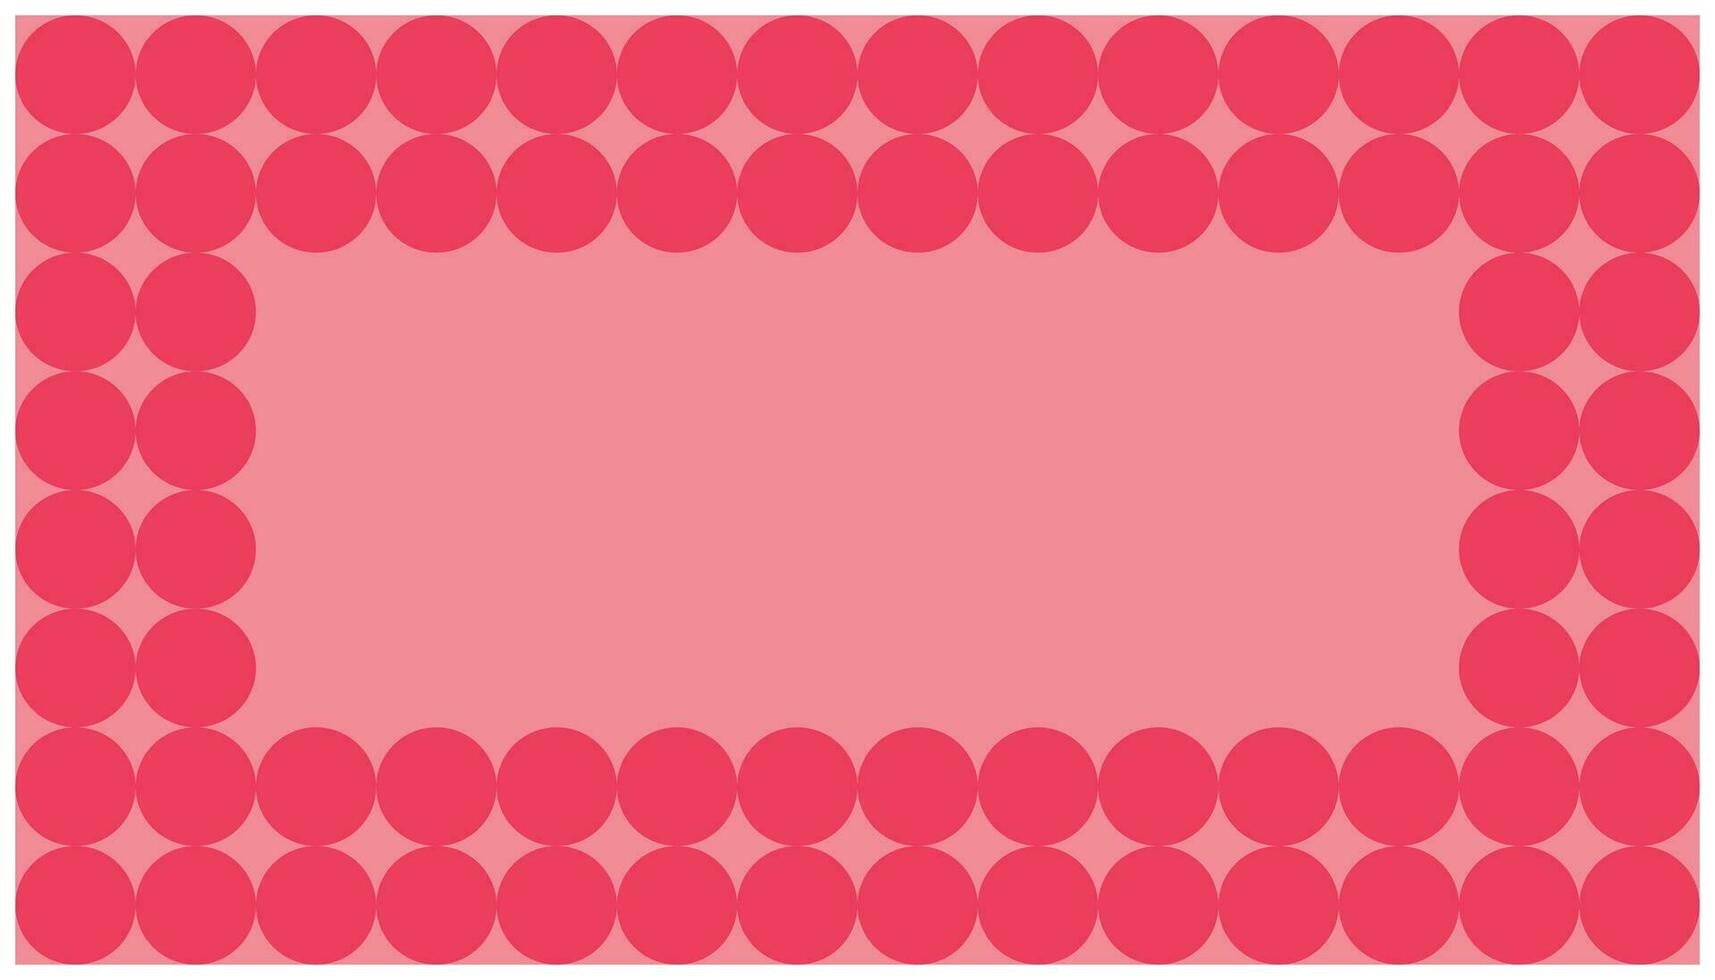 Rosa polca ponto fundo. abstrato fundo com círculos dentro Rosa e vermelho cores. vetor ilustração.